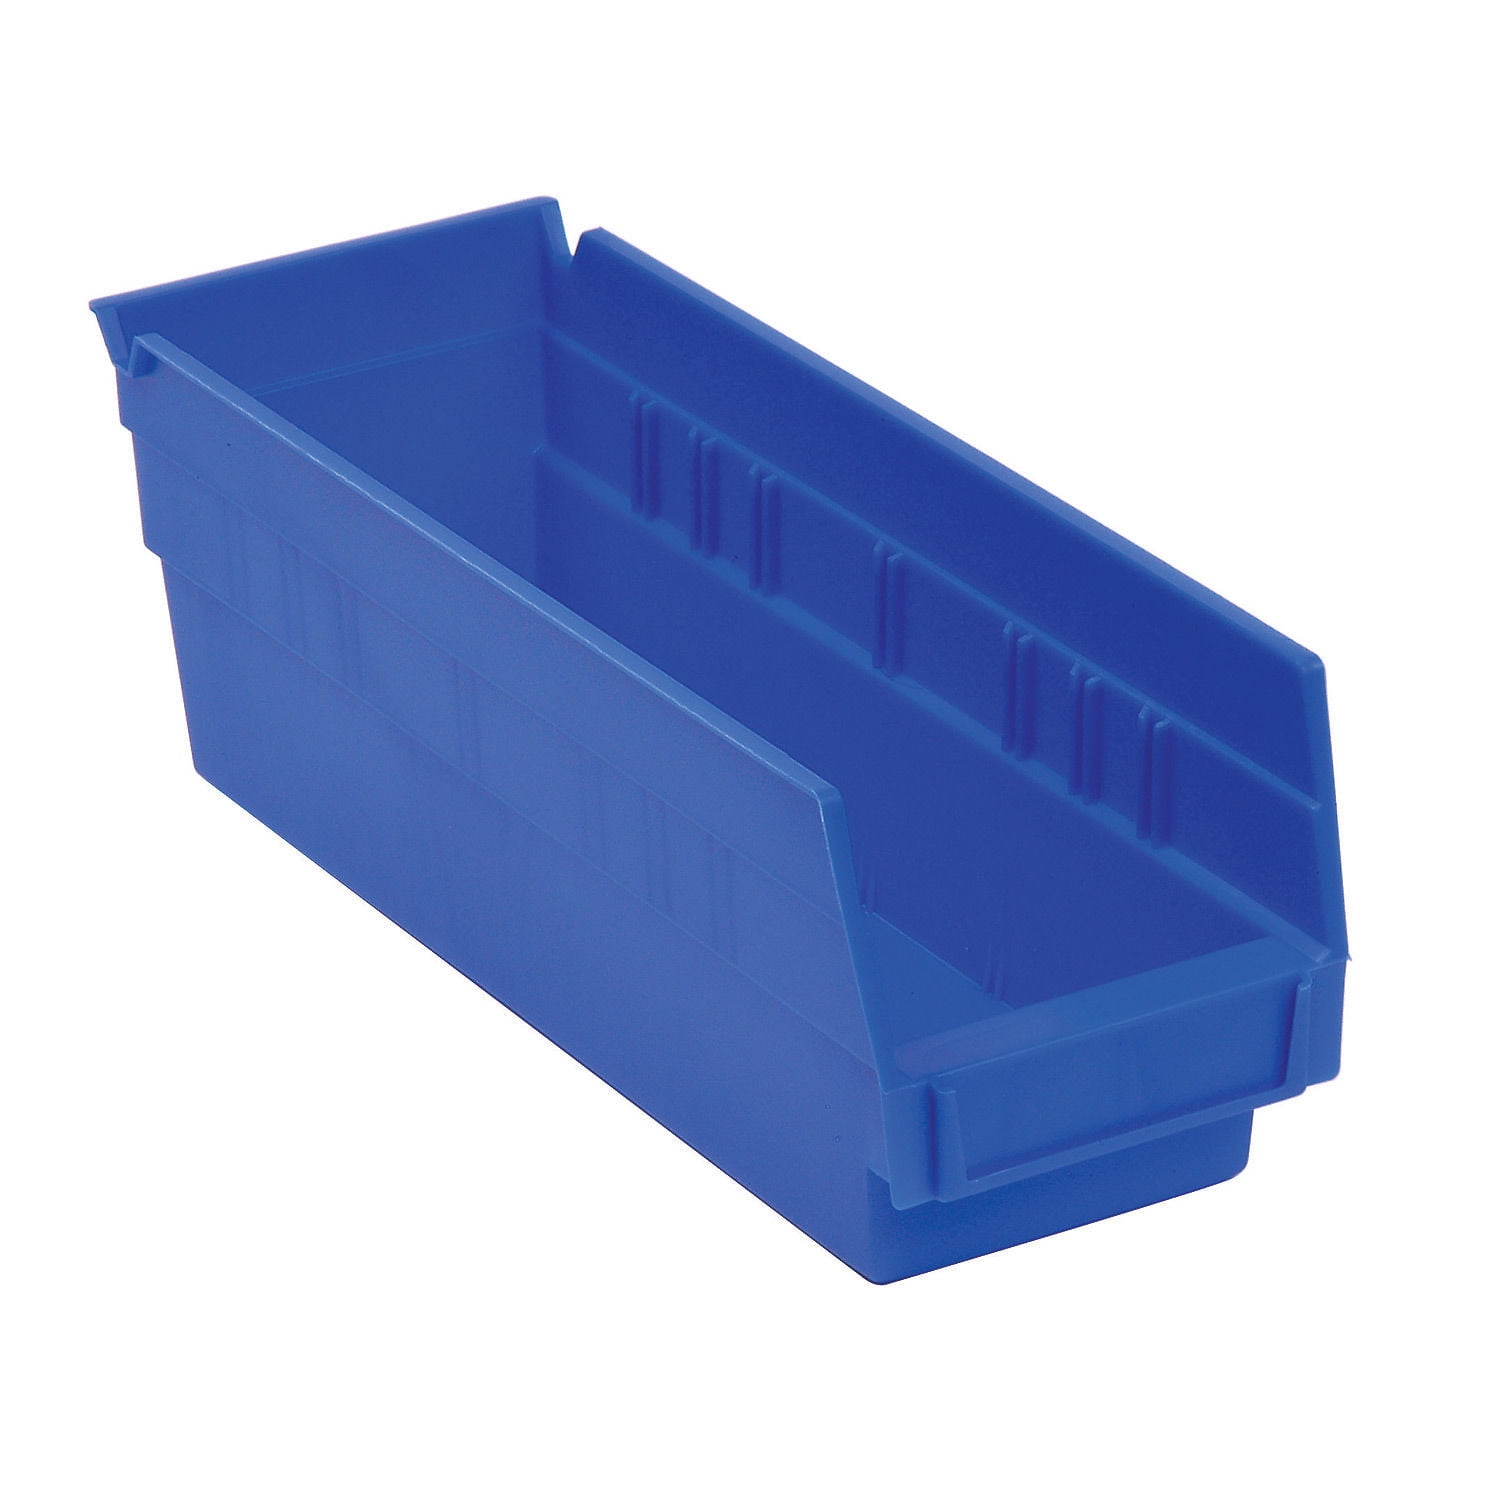 Lot of 12 Plastic Shelf Bin Nestable 4-1/8"W x 23-5/8" D x 4"H Blue 